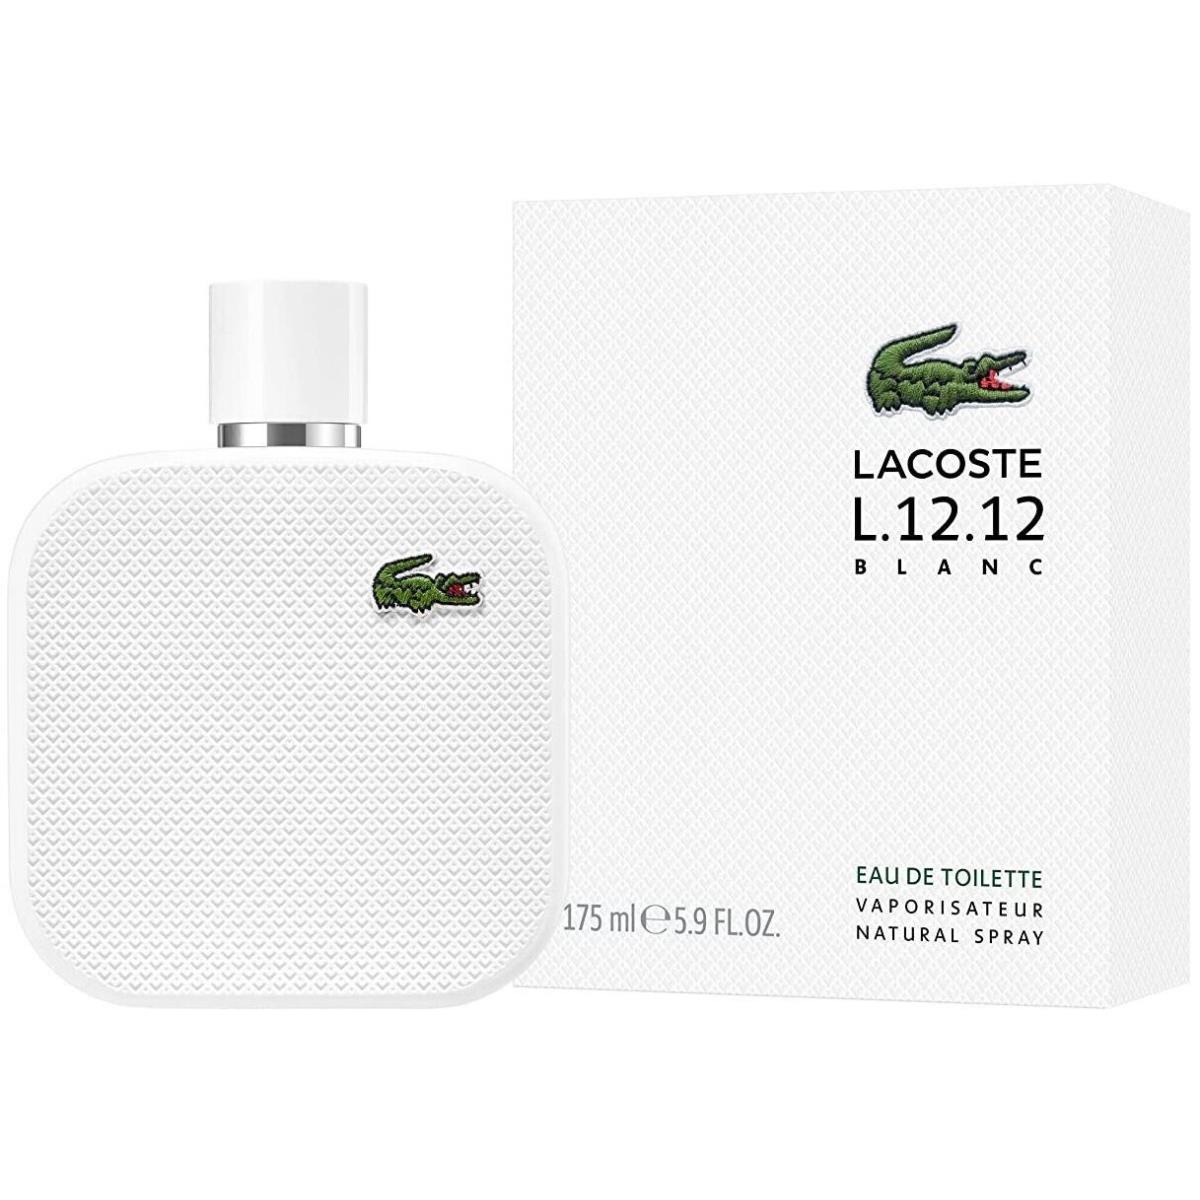 Lacoste L.12.12 Blanc by Lacoste For Men Edt 5.9 oz Lacoste perfume,cologne,fragrance,parfum - Fash Brands